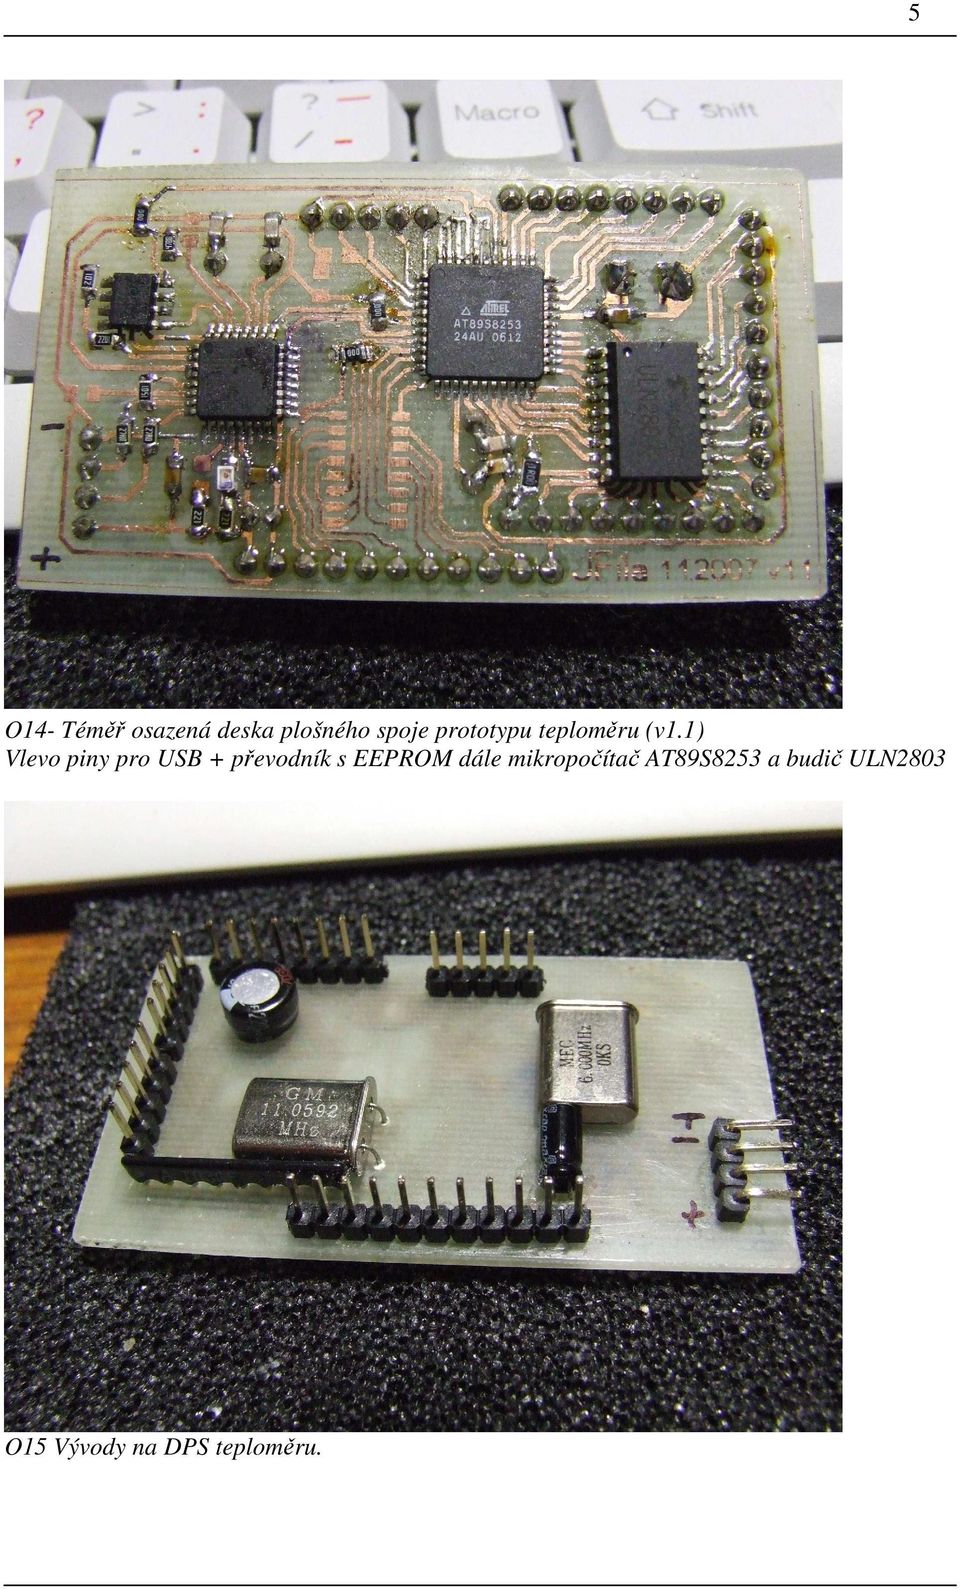 1) Vlevo piny pro USB + převodník s EEPROM